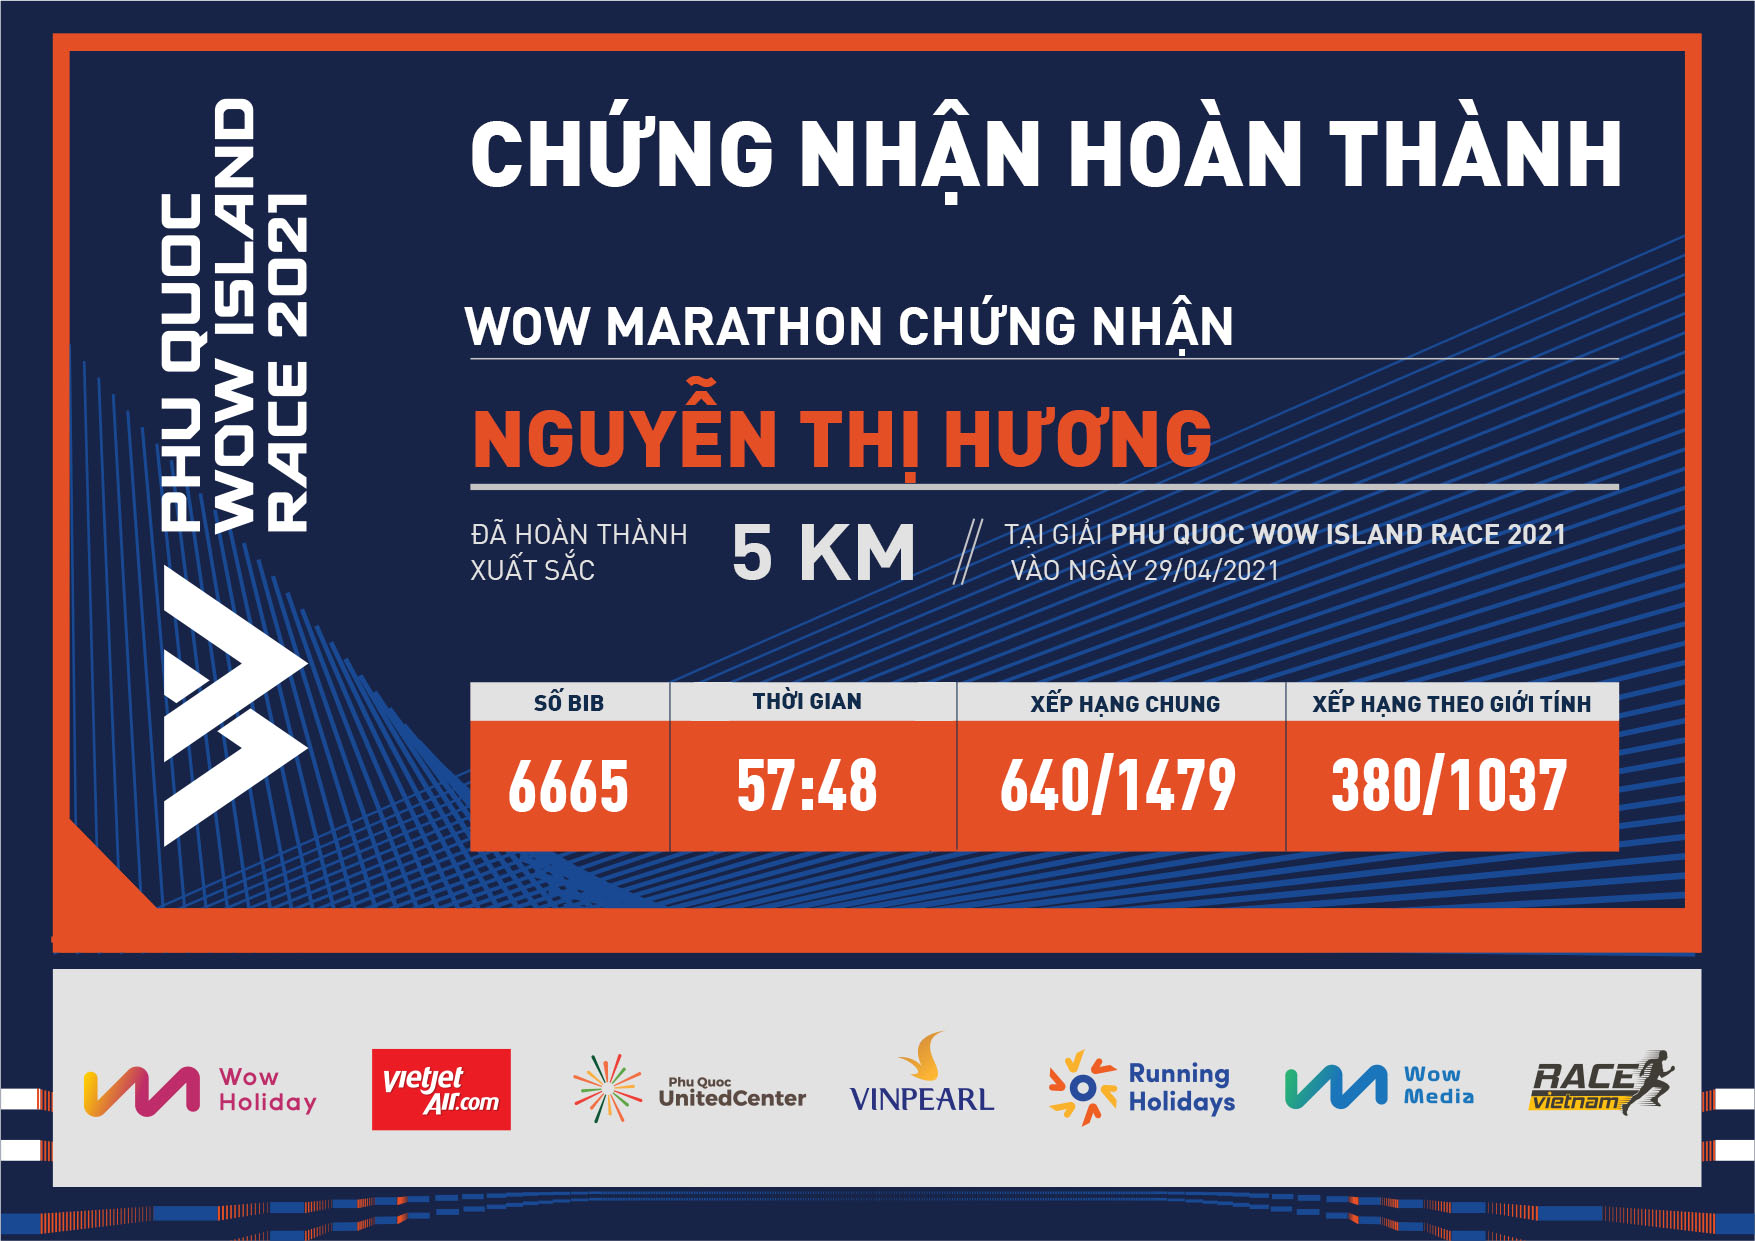 6665 - Nguyễn Thị Hương